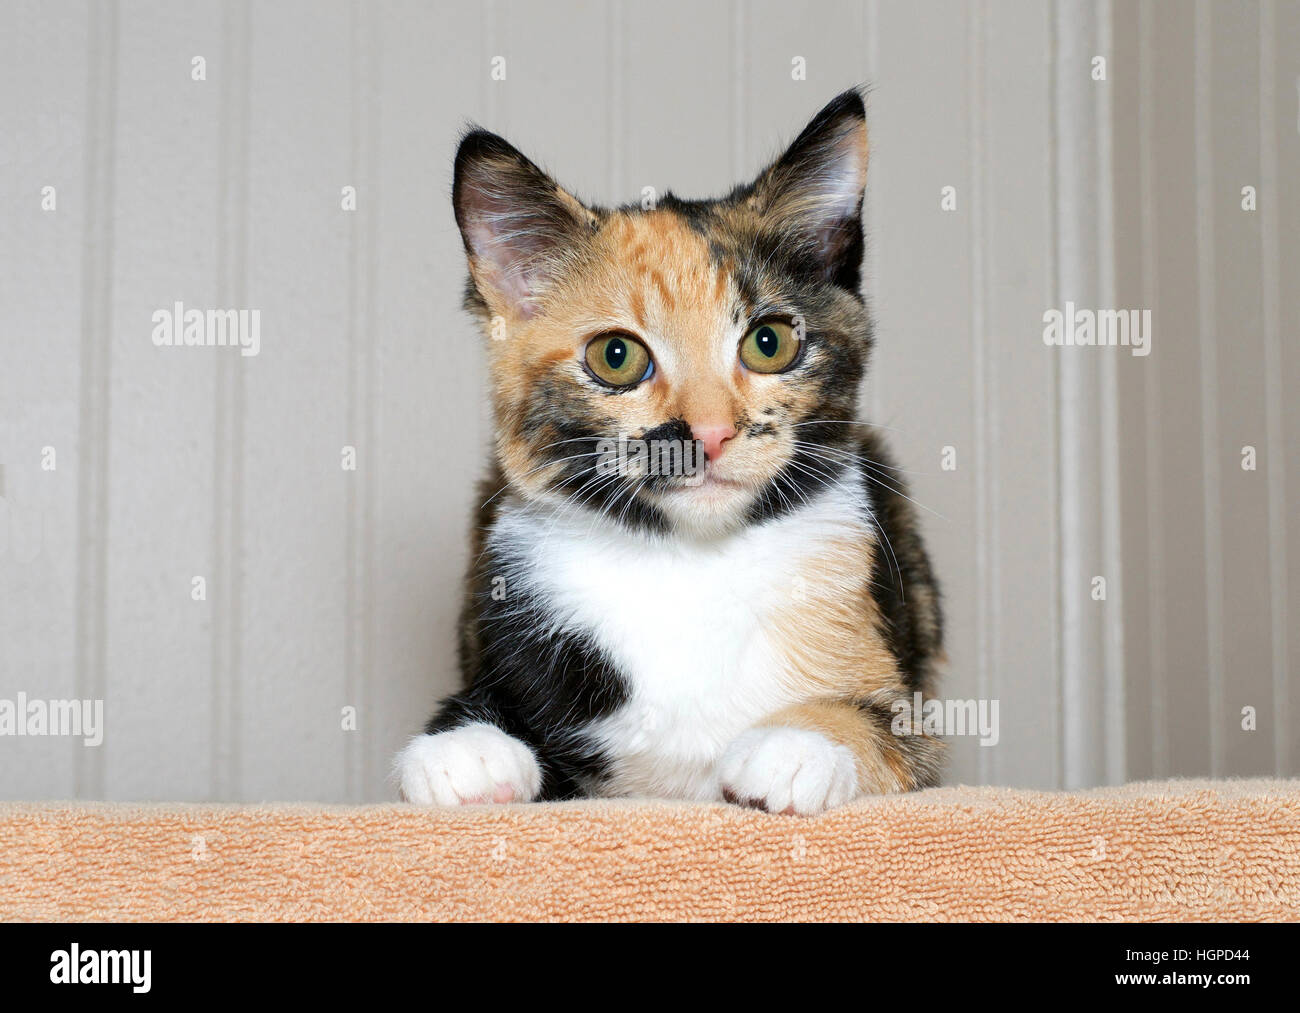 El calicó gato atigrado Tortie gatito en una manta naranja mirando  directamente al espectador con curiosidad amarillo verde ojos marrones.  Espacio de copia Fotografía de stock - Alamy